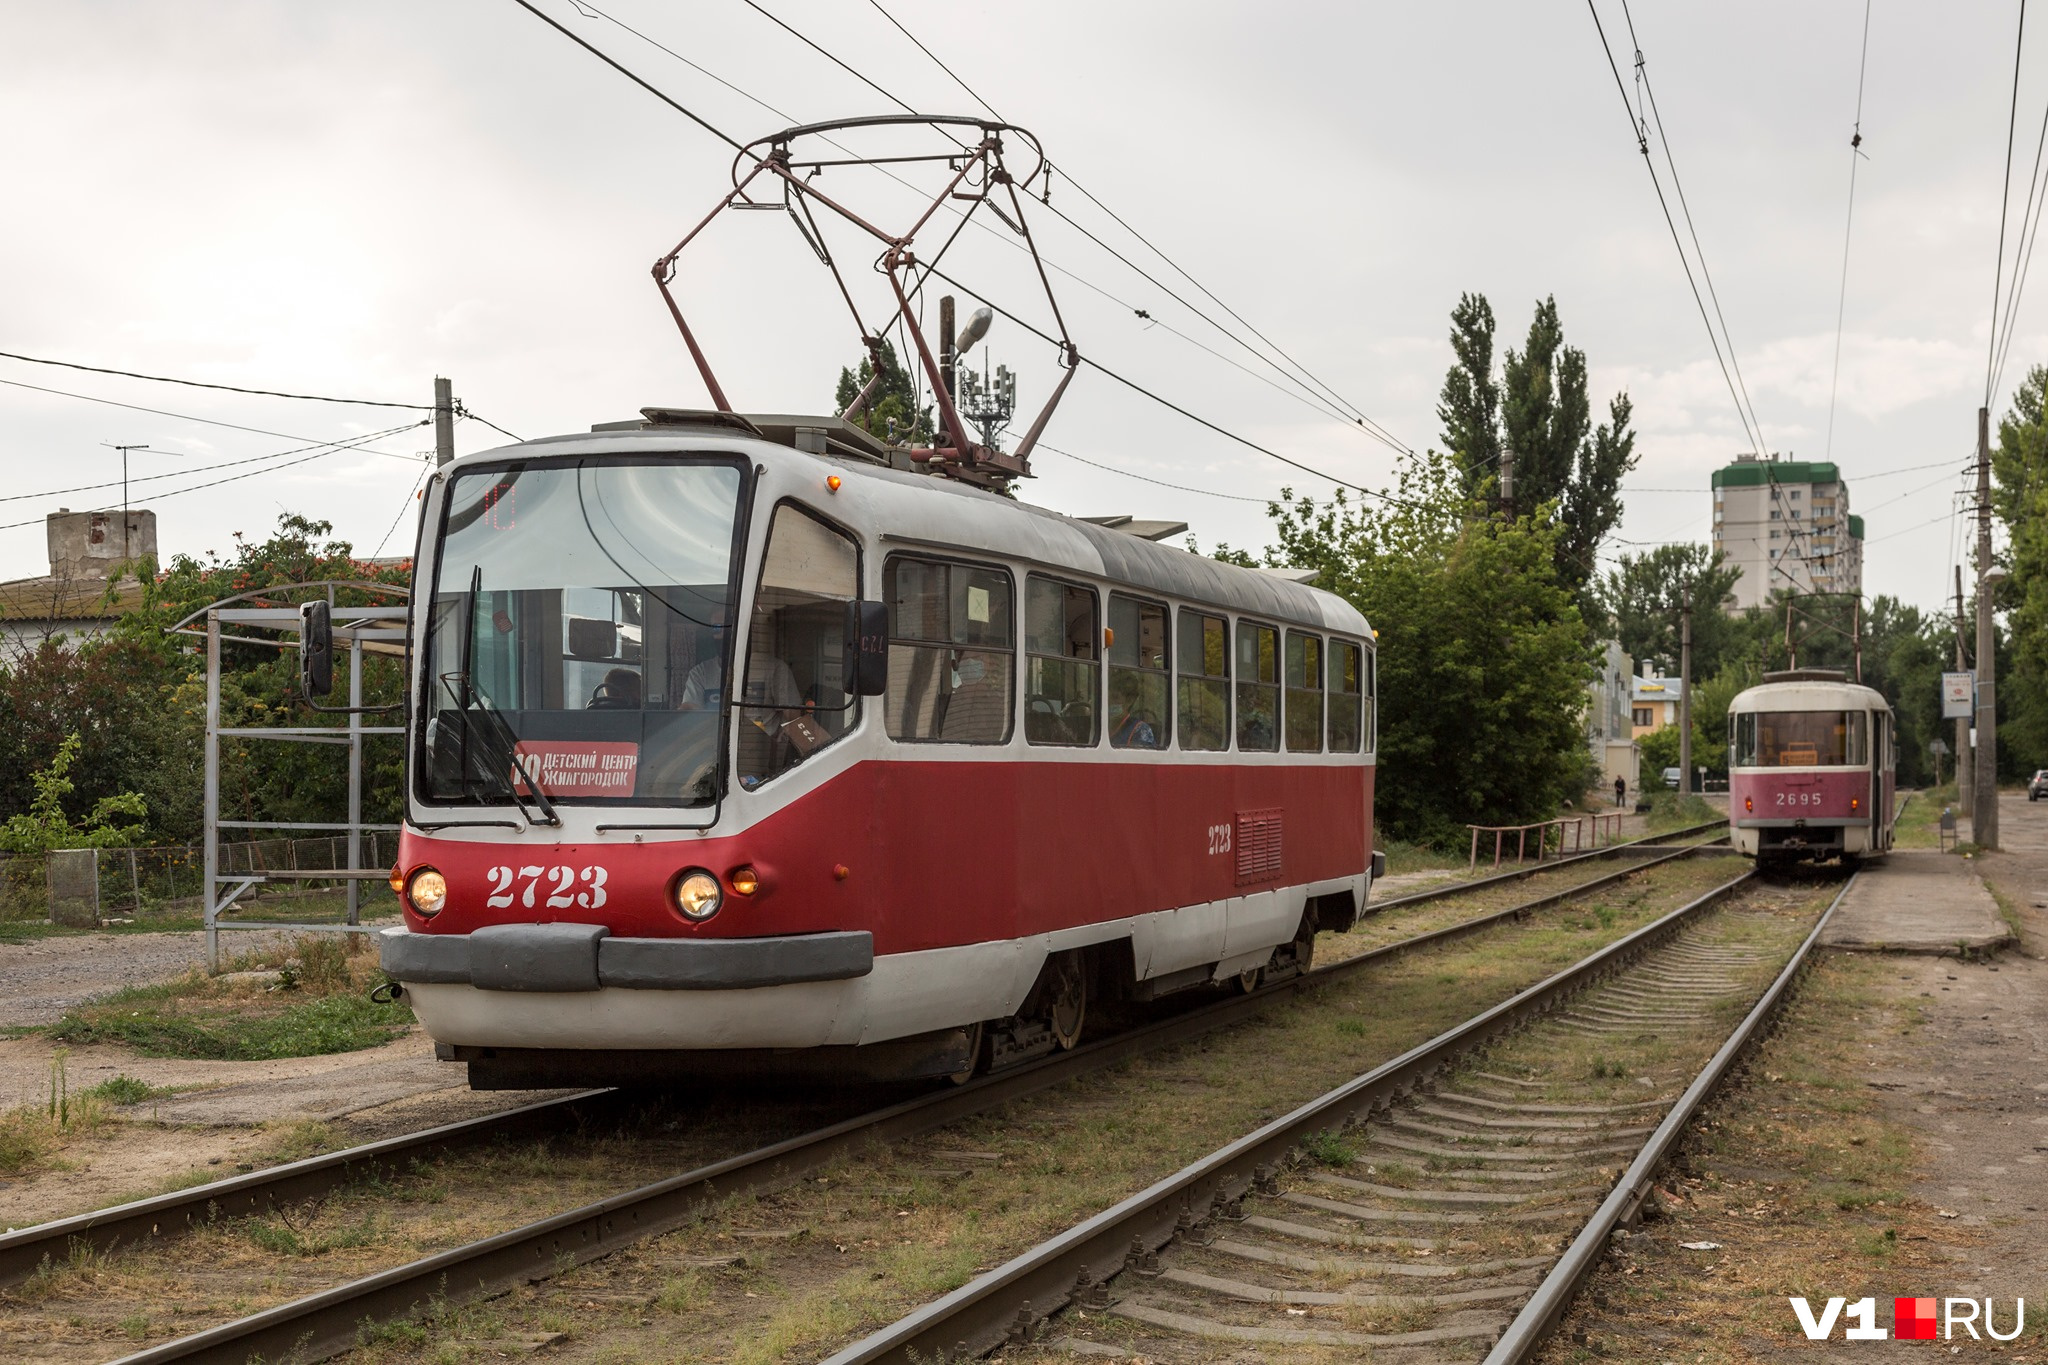 Волгоградский трамвай имеет богатую историю. Первые трамваи появились в этом городе еще до революции, в 1913 году